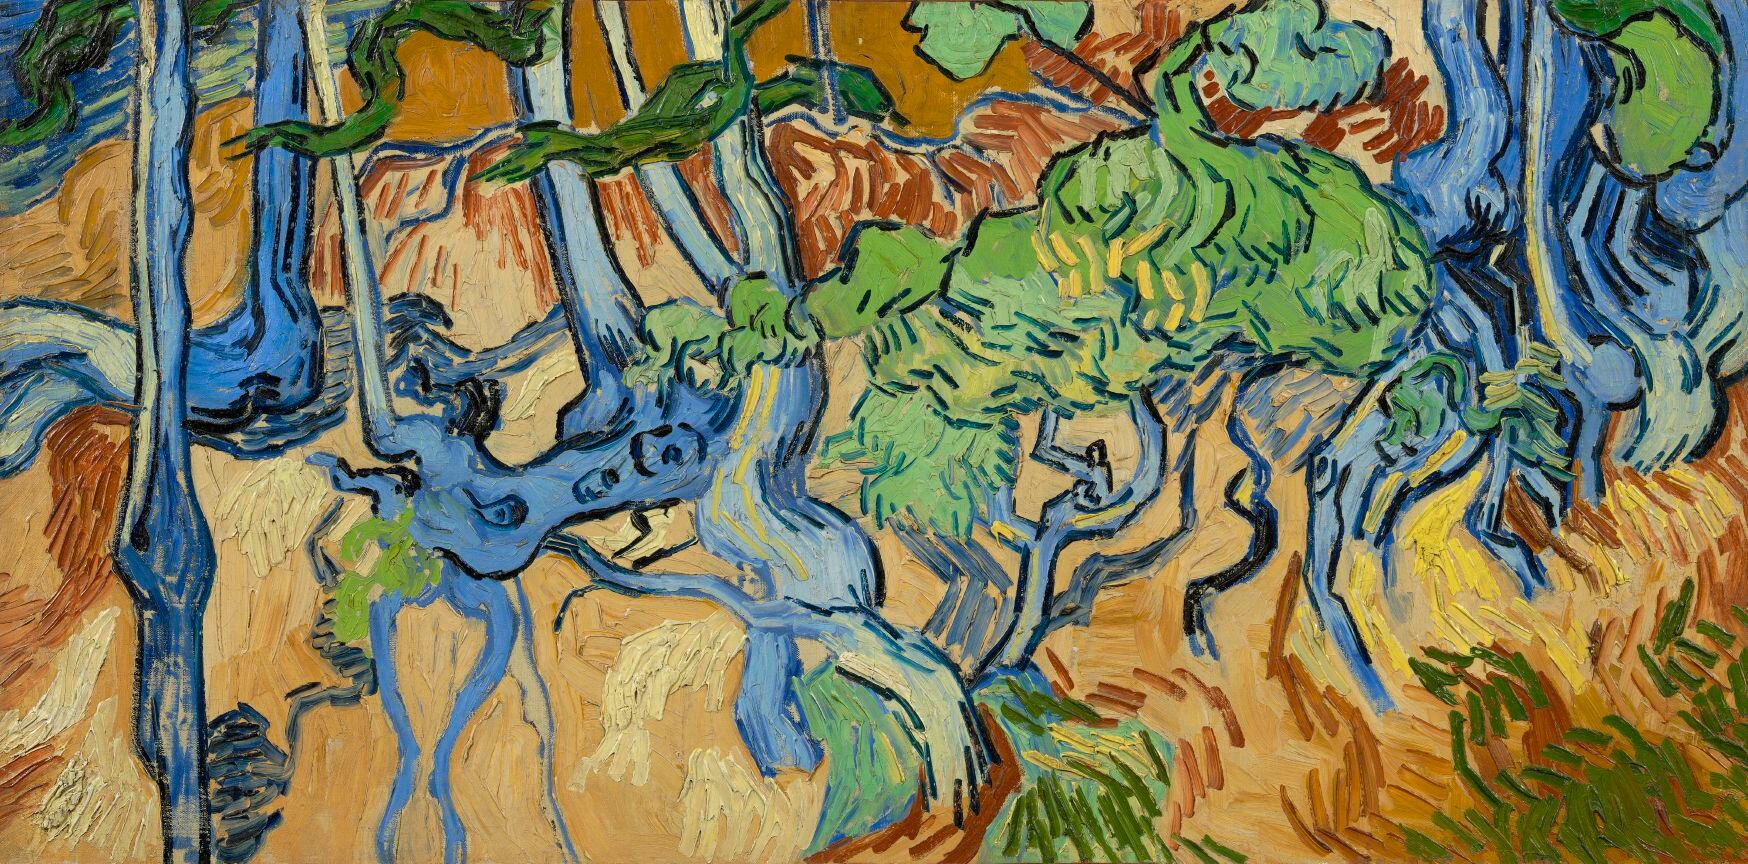 'Tree Roots' ('Raíces de árbol'), Vincent van Gogh, Auvers-sur-Oise, 1890, óleo sobre lienzo, 50,3 cm x 100,1 cm. Cortesía del Museo Van Gogh, Ámsterdam (Vincent van Gogh Foundation).